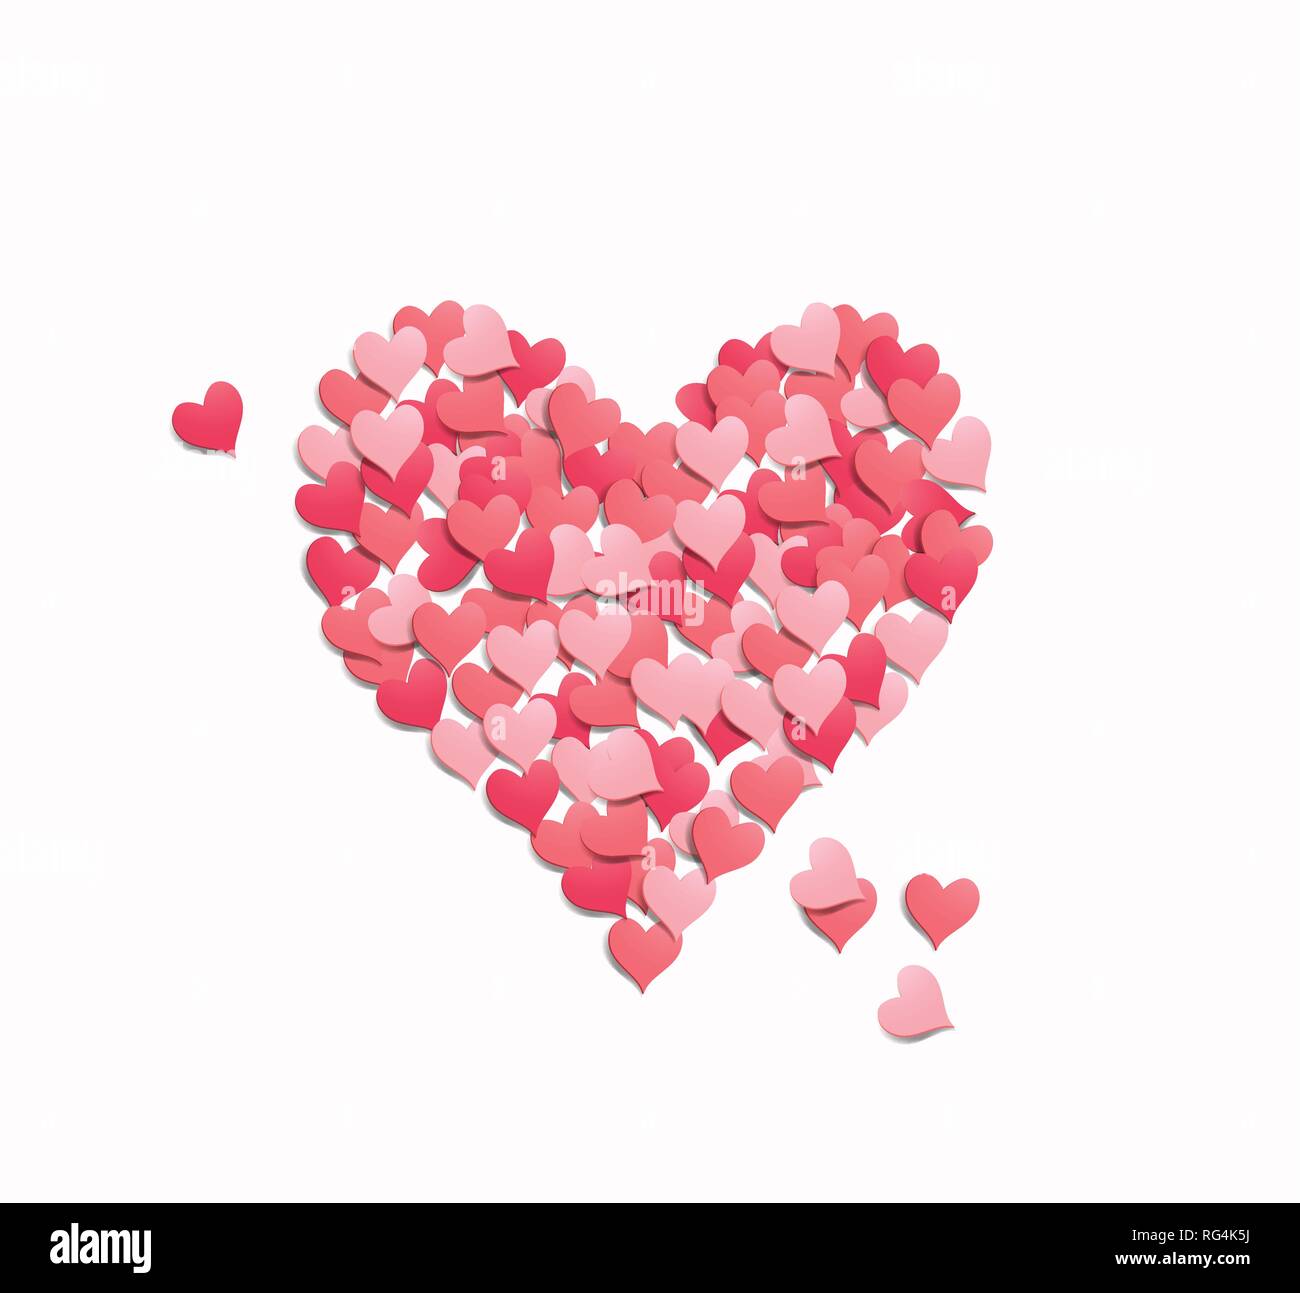 Love Heart coeur forme fabriqués à partir de confettis. Saint-valentin vector illustration. Illustration de Vecteur